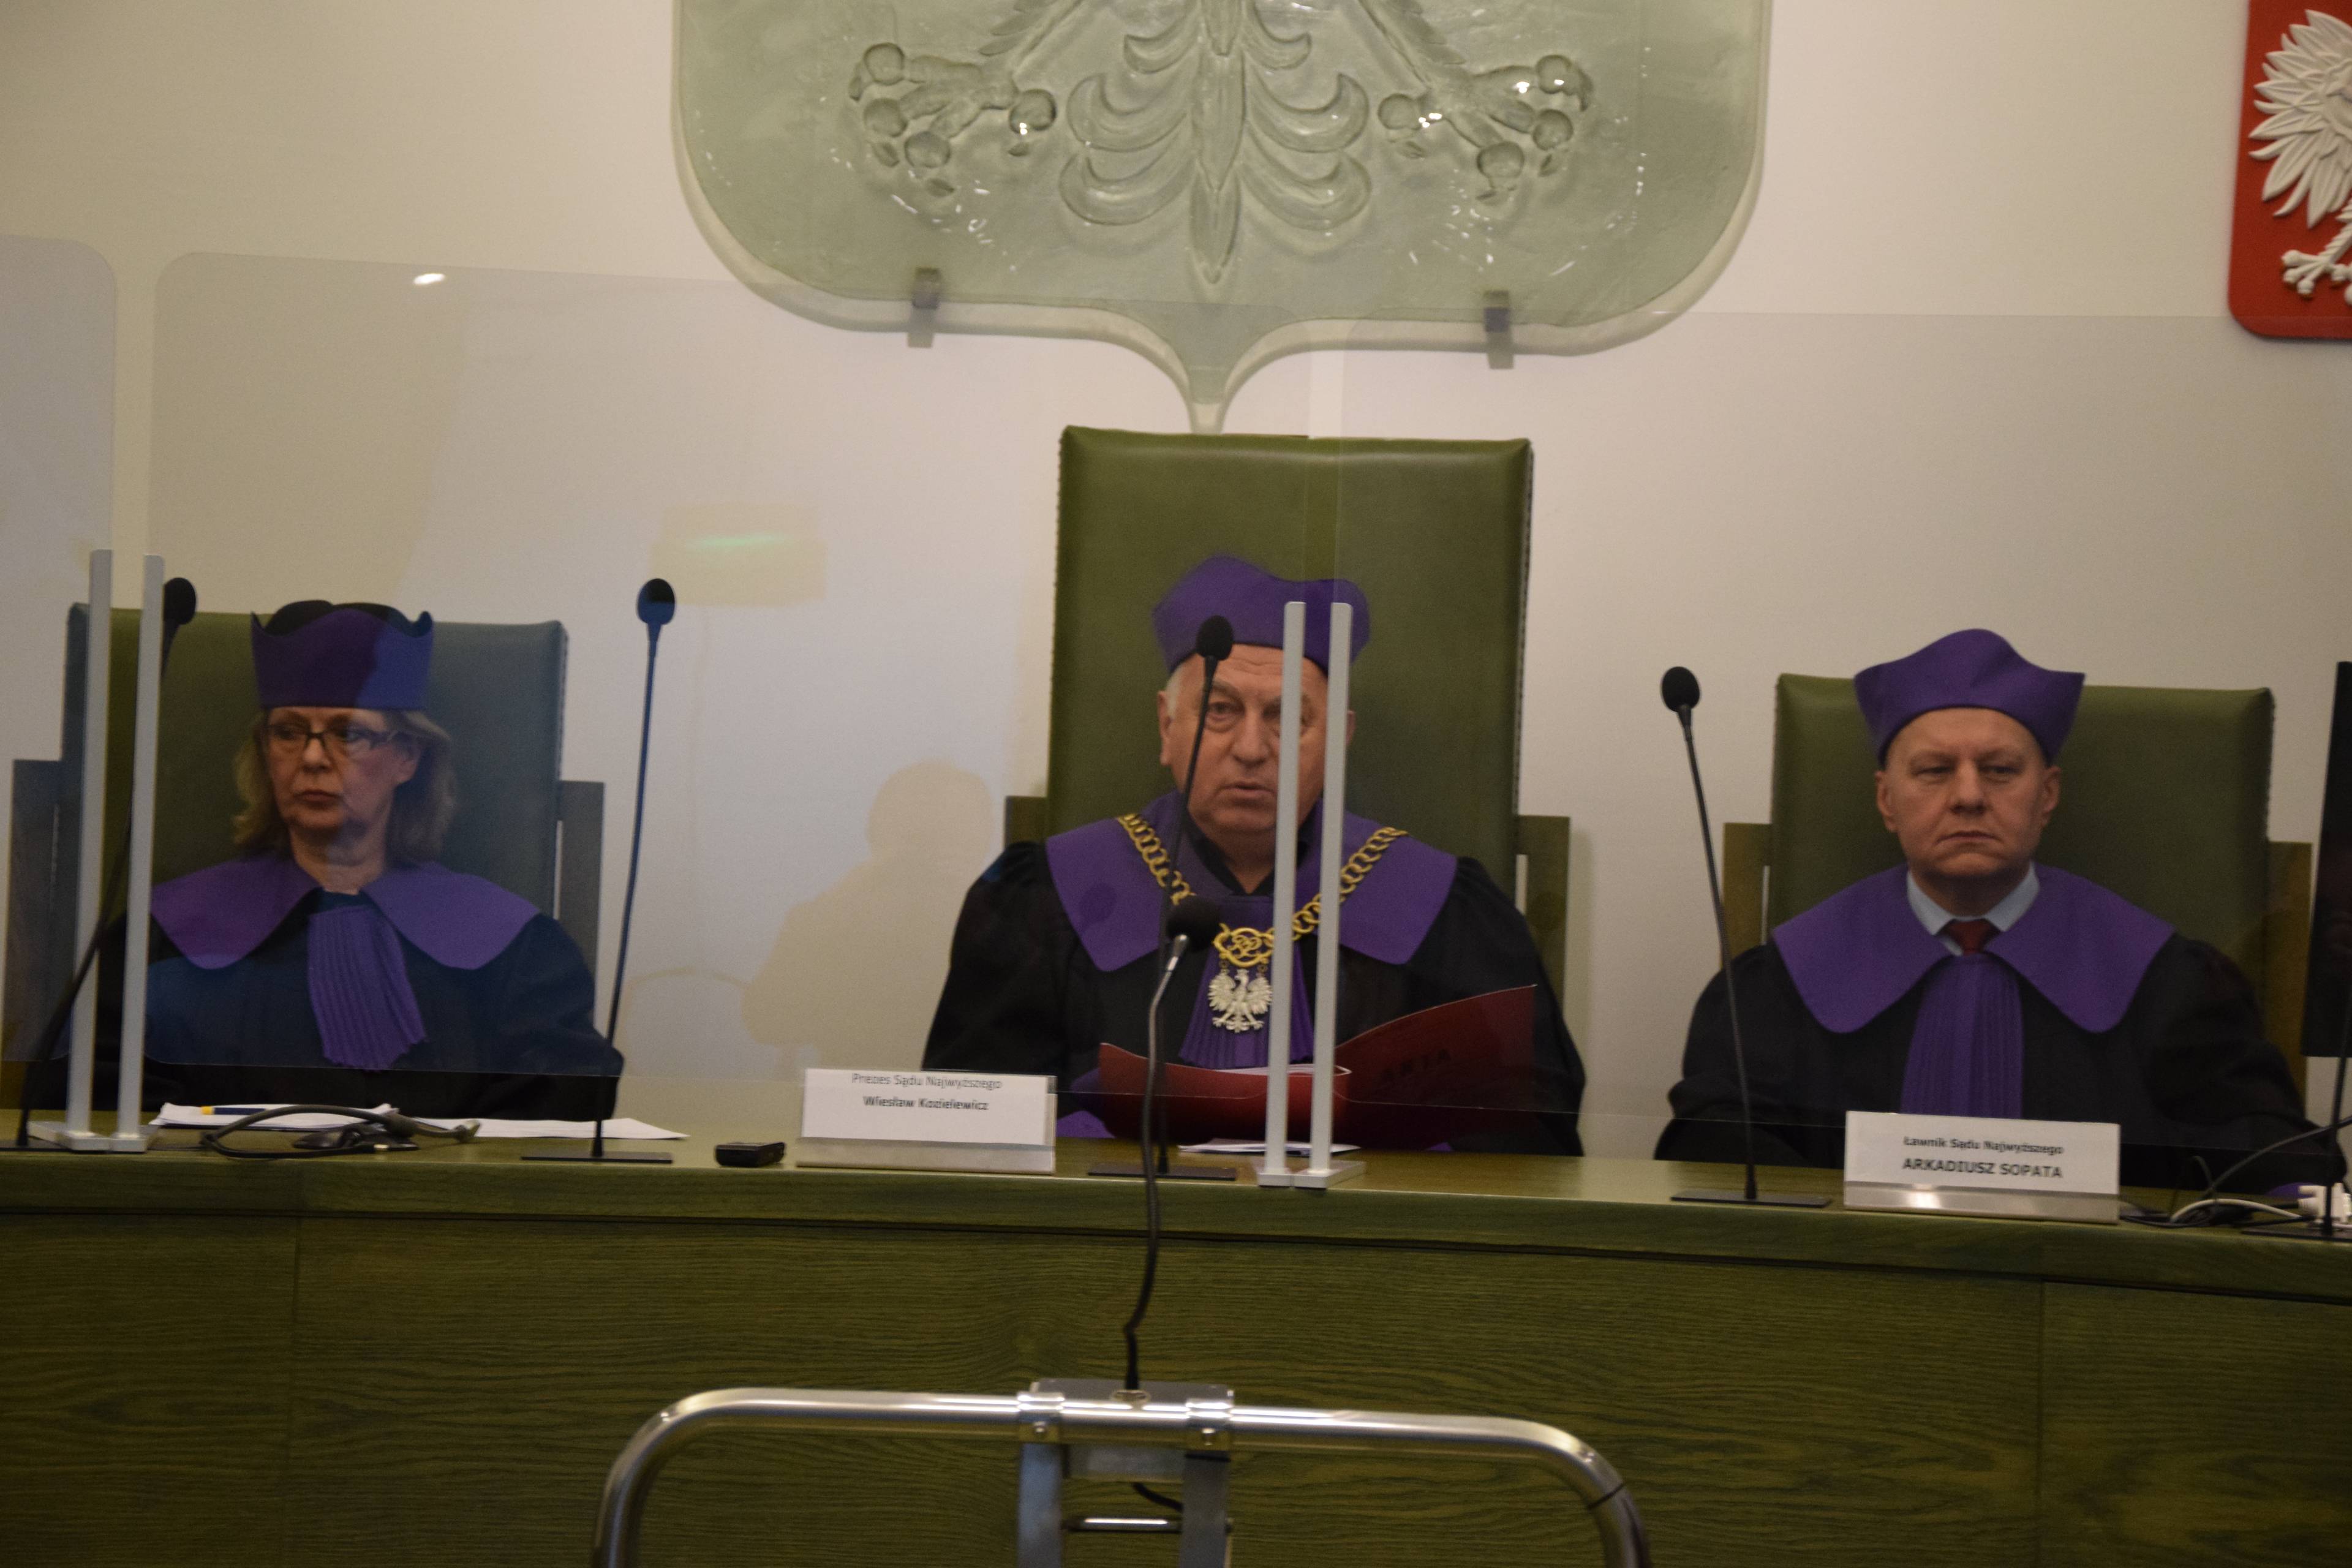 Trzej sędziowie w togach Sądu Najwyższego (fioletowe wyłogi i czapki) siedzą za stołem